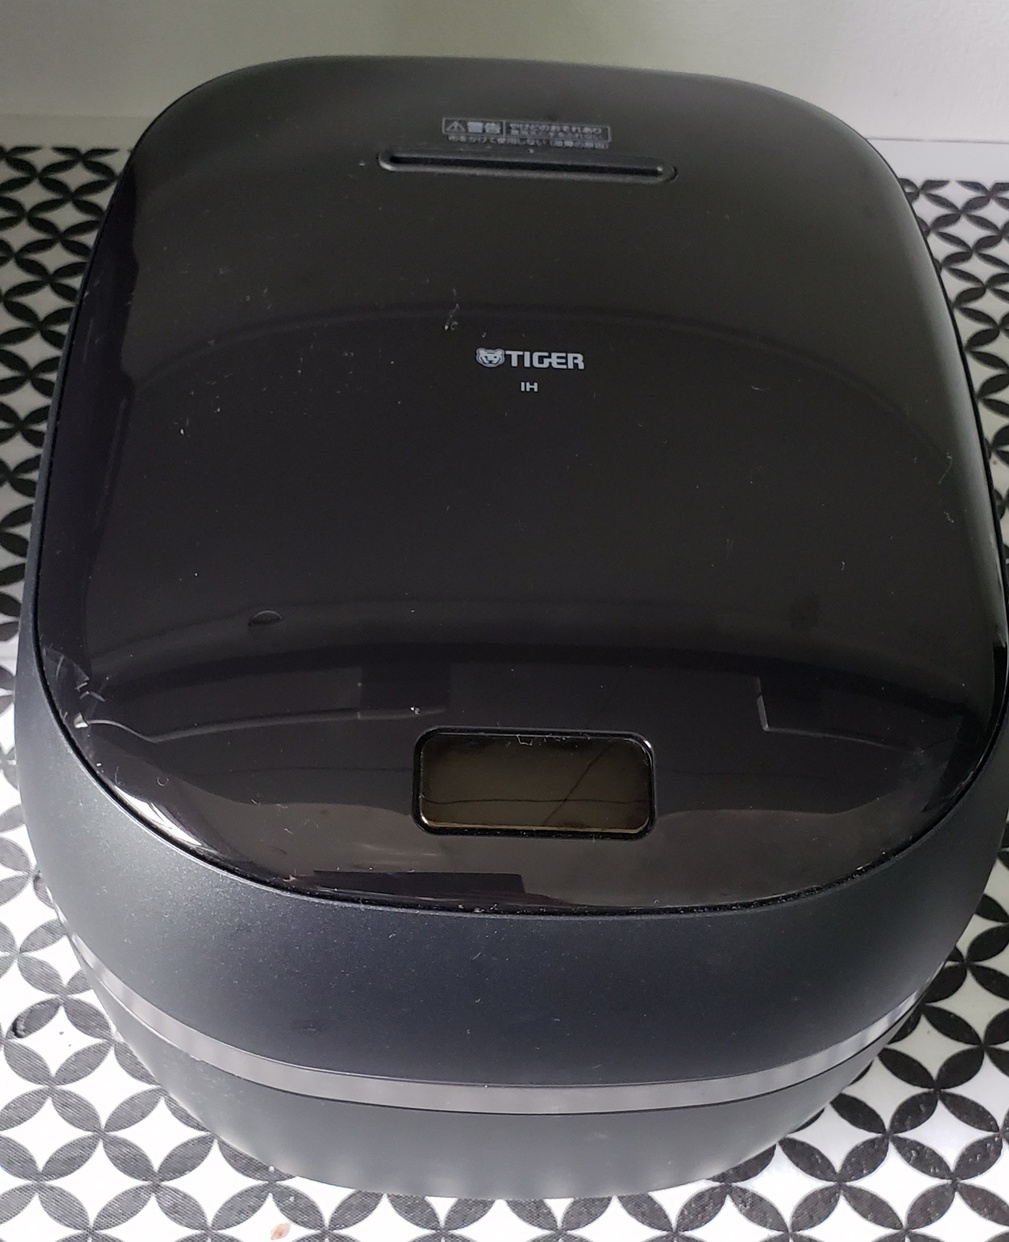 生活家電 炊飯器 タイガー魔法瓶(TIGER) 土鍋圧力IHジャー炊飯器 JPG-S100の悪い口コミ 